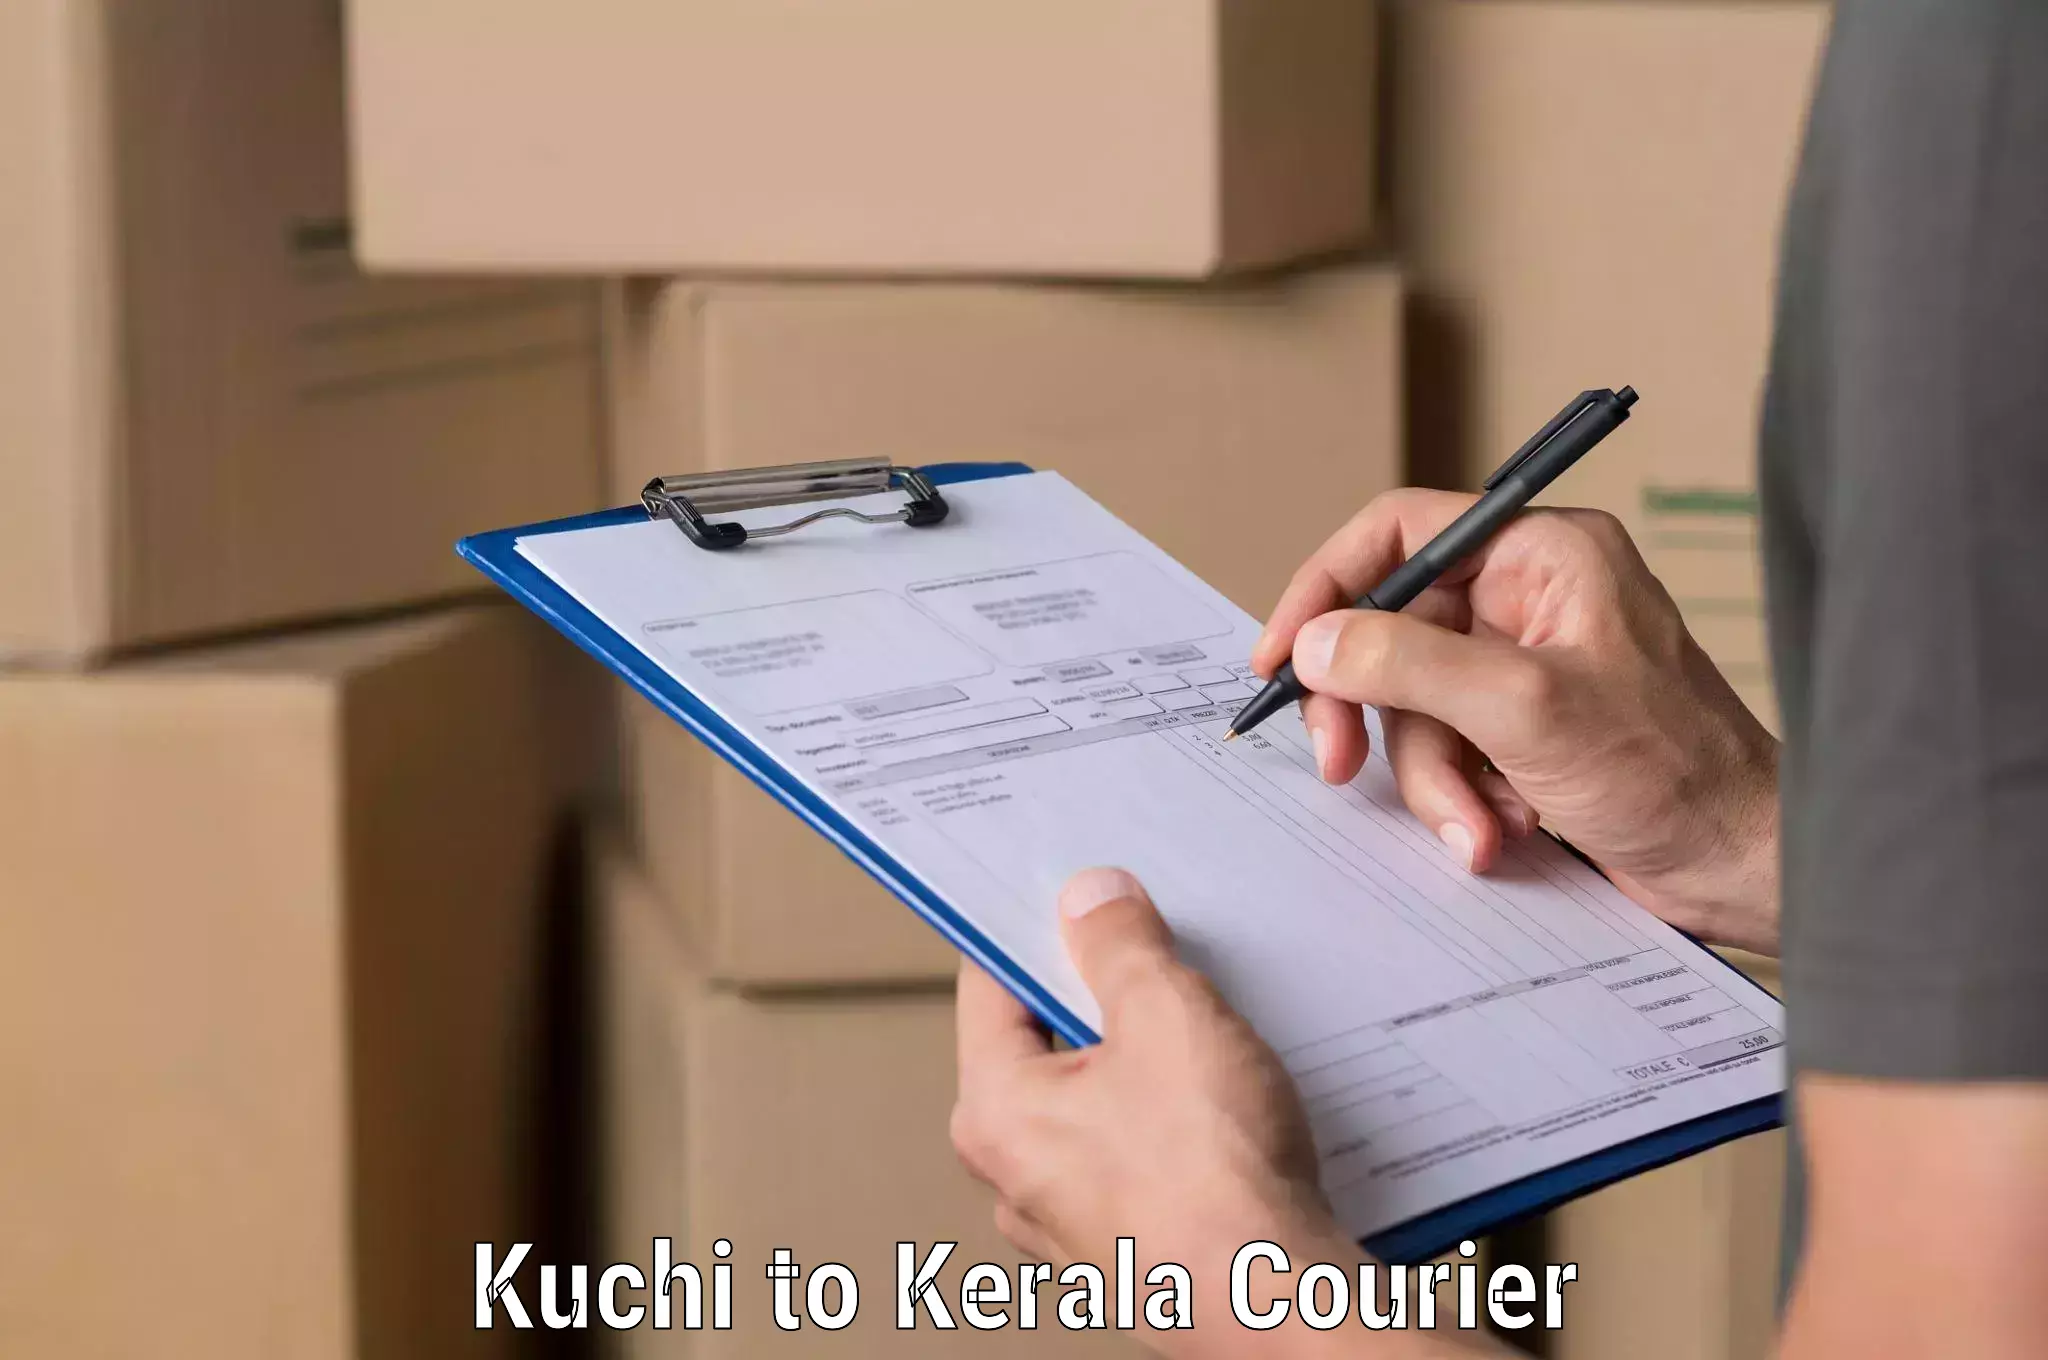 Efficient parcel service Kuchi to Idukki